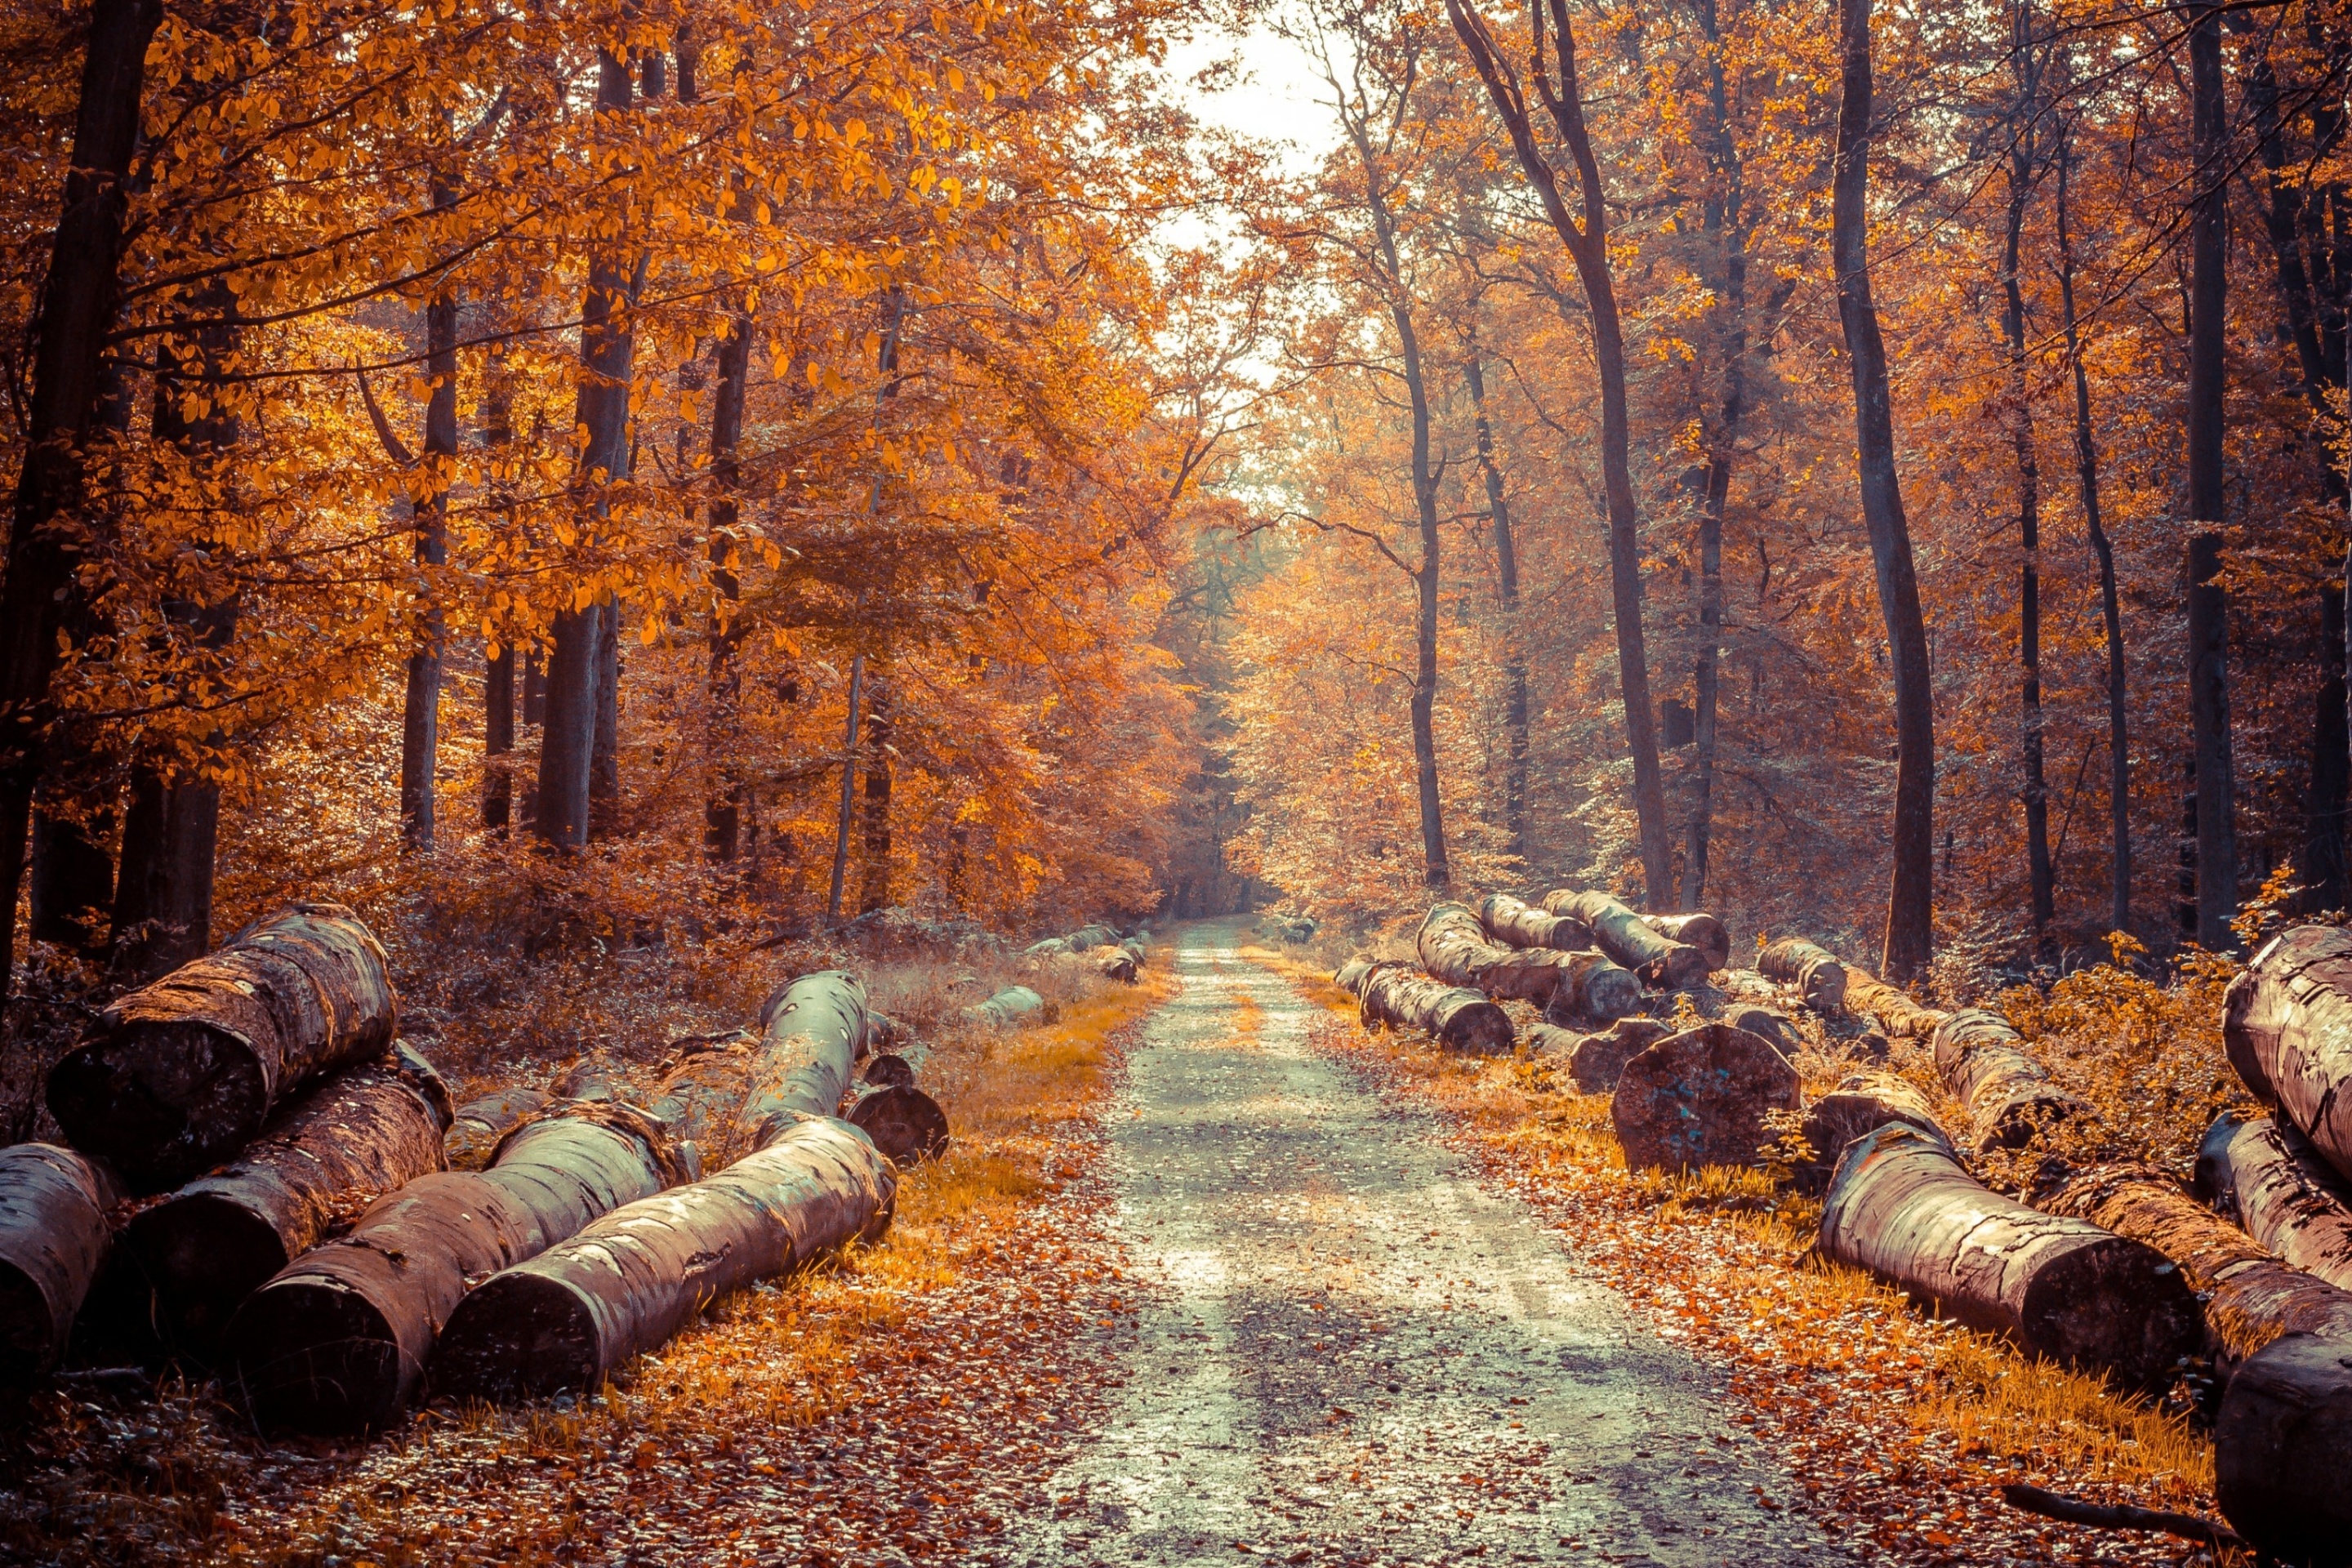 Das Road in the wild autumn forest Wallpaper 2880x1920